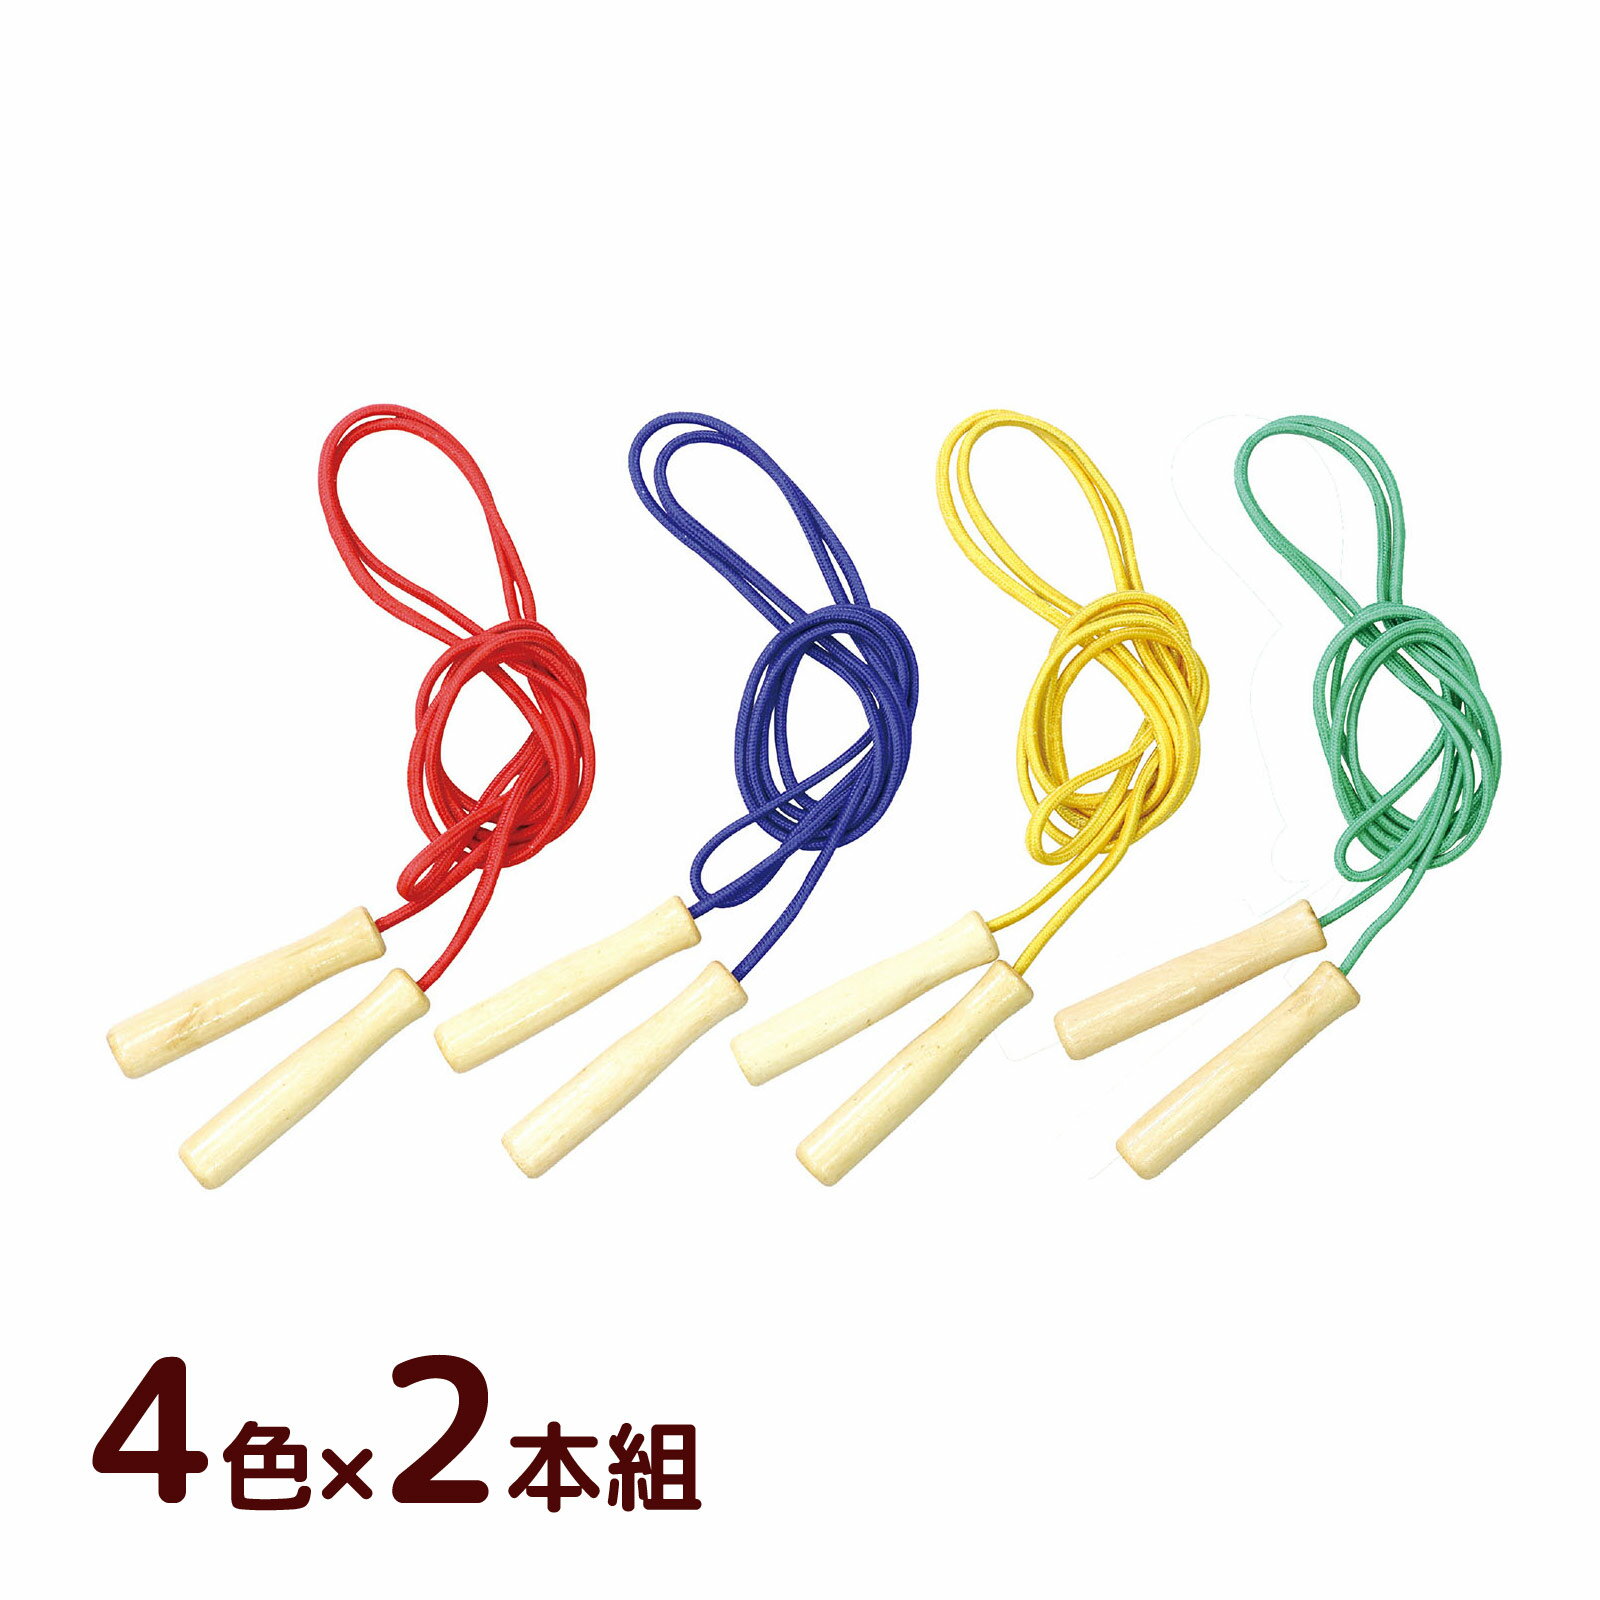 縄跳び 子供用 ロープ カラー木柄なわとび 4色×2本組 縄飛び まとめ買い 小学生 運動神経 ダイエット トレーニング用